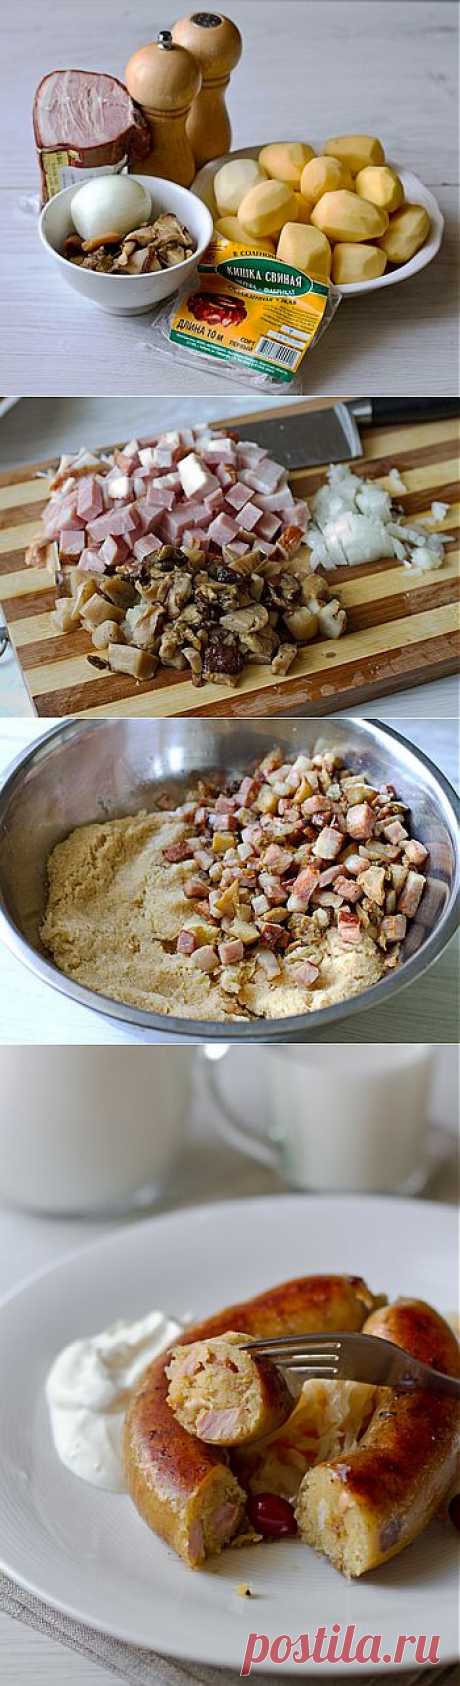 Пошаговый фото-рецепт картофельной колбасы | Вторые блюда | Вкусный блог - рецепты под настроение